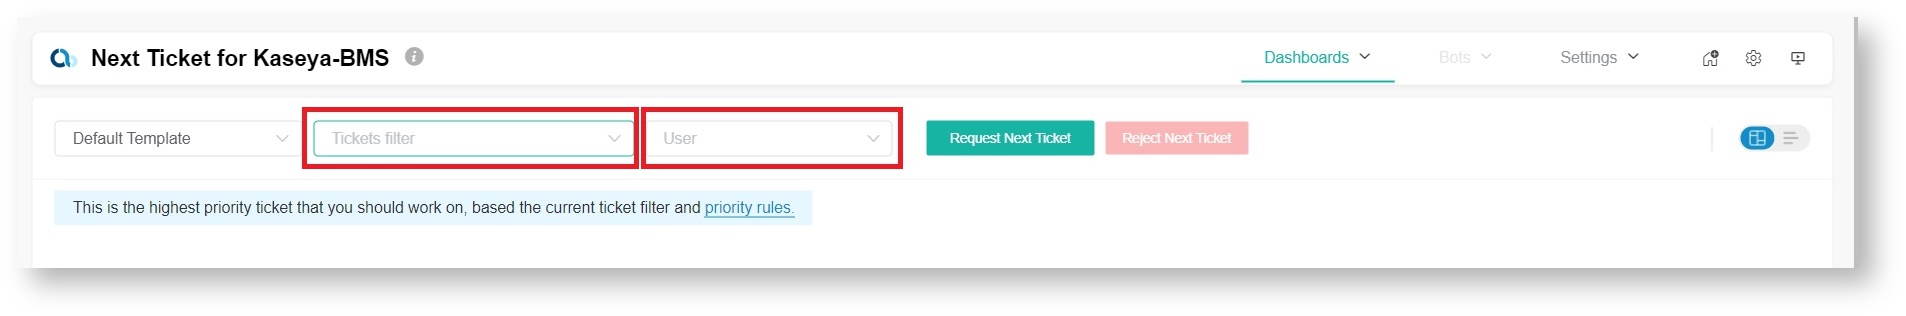 NextTicket Kaseya BMS Ticket_User filters